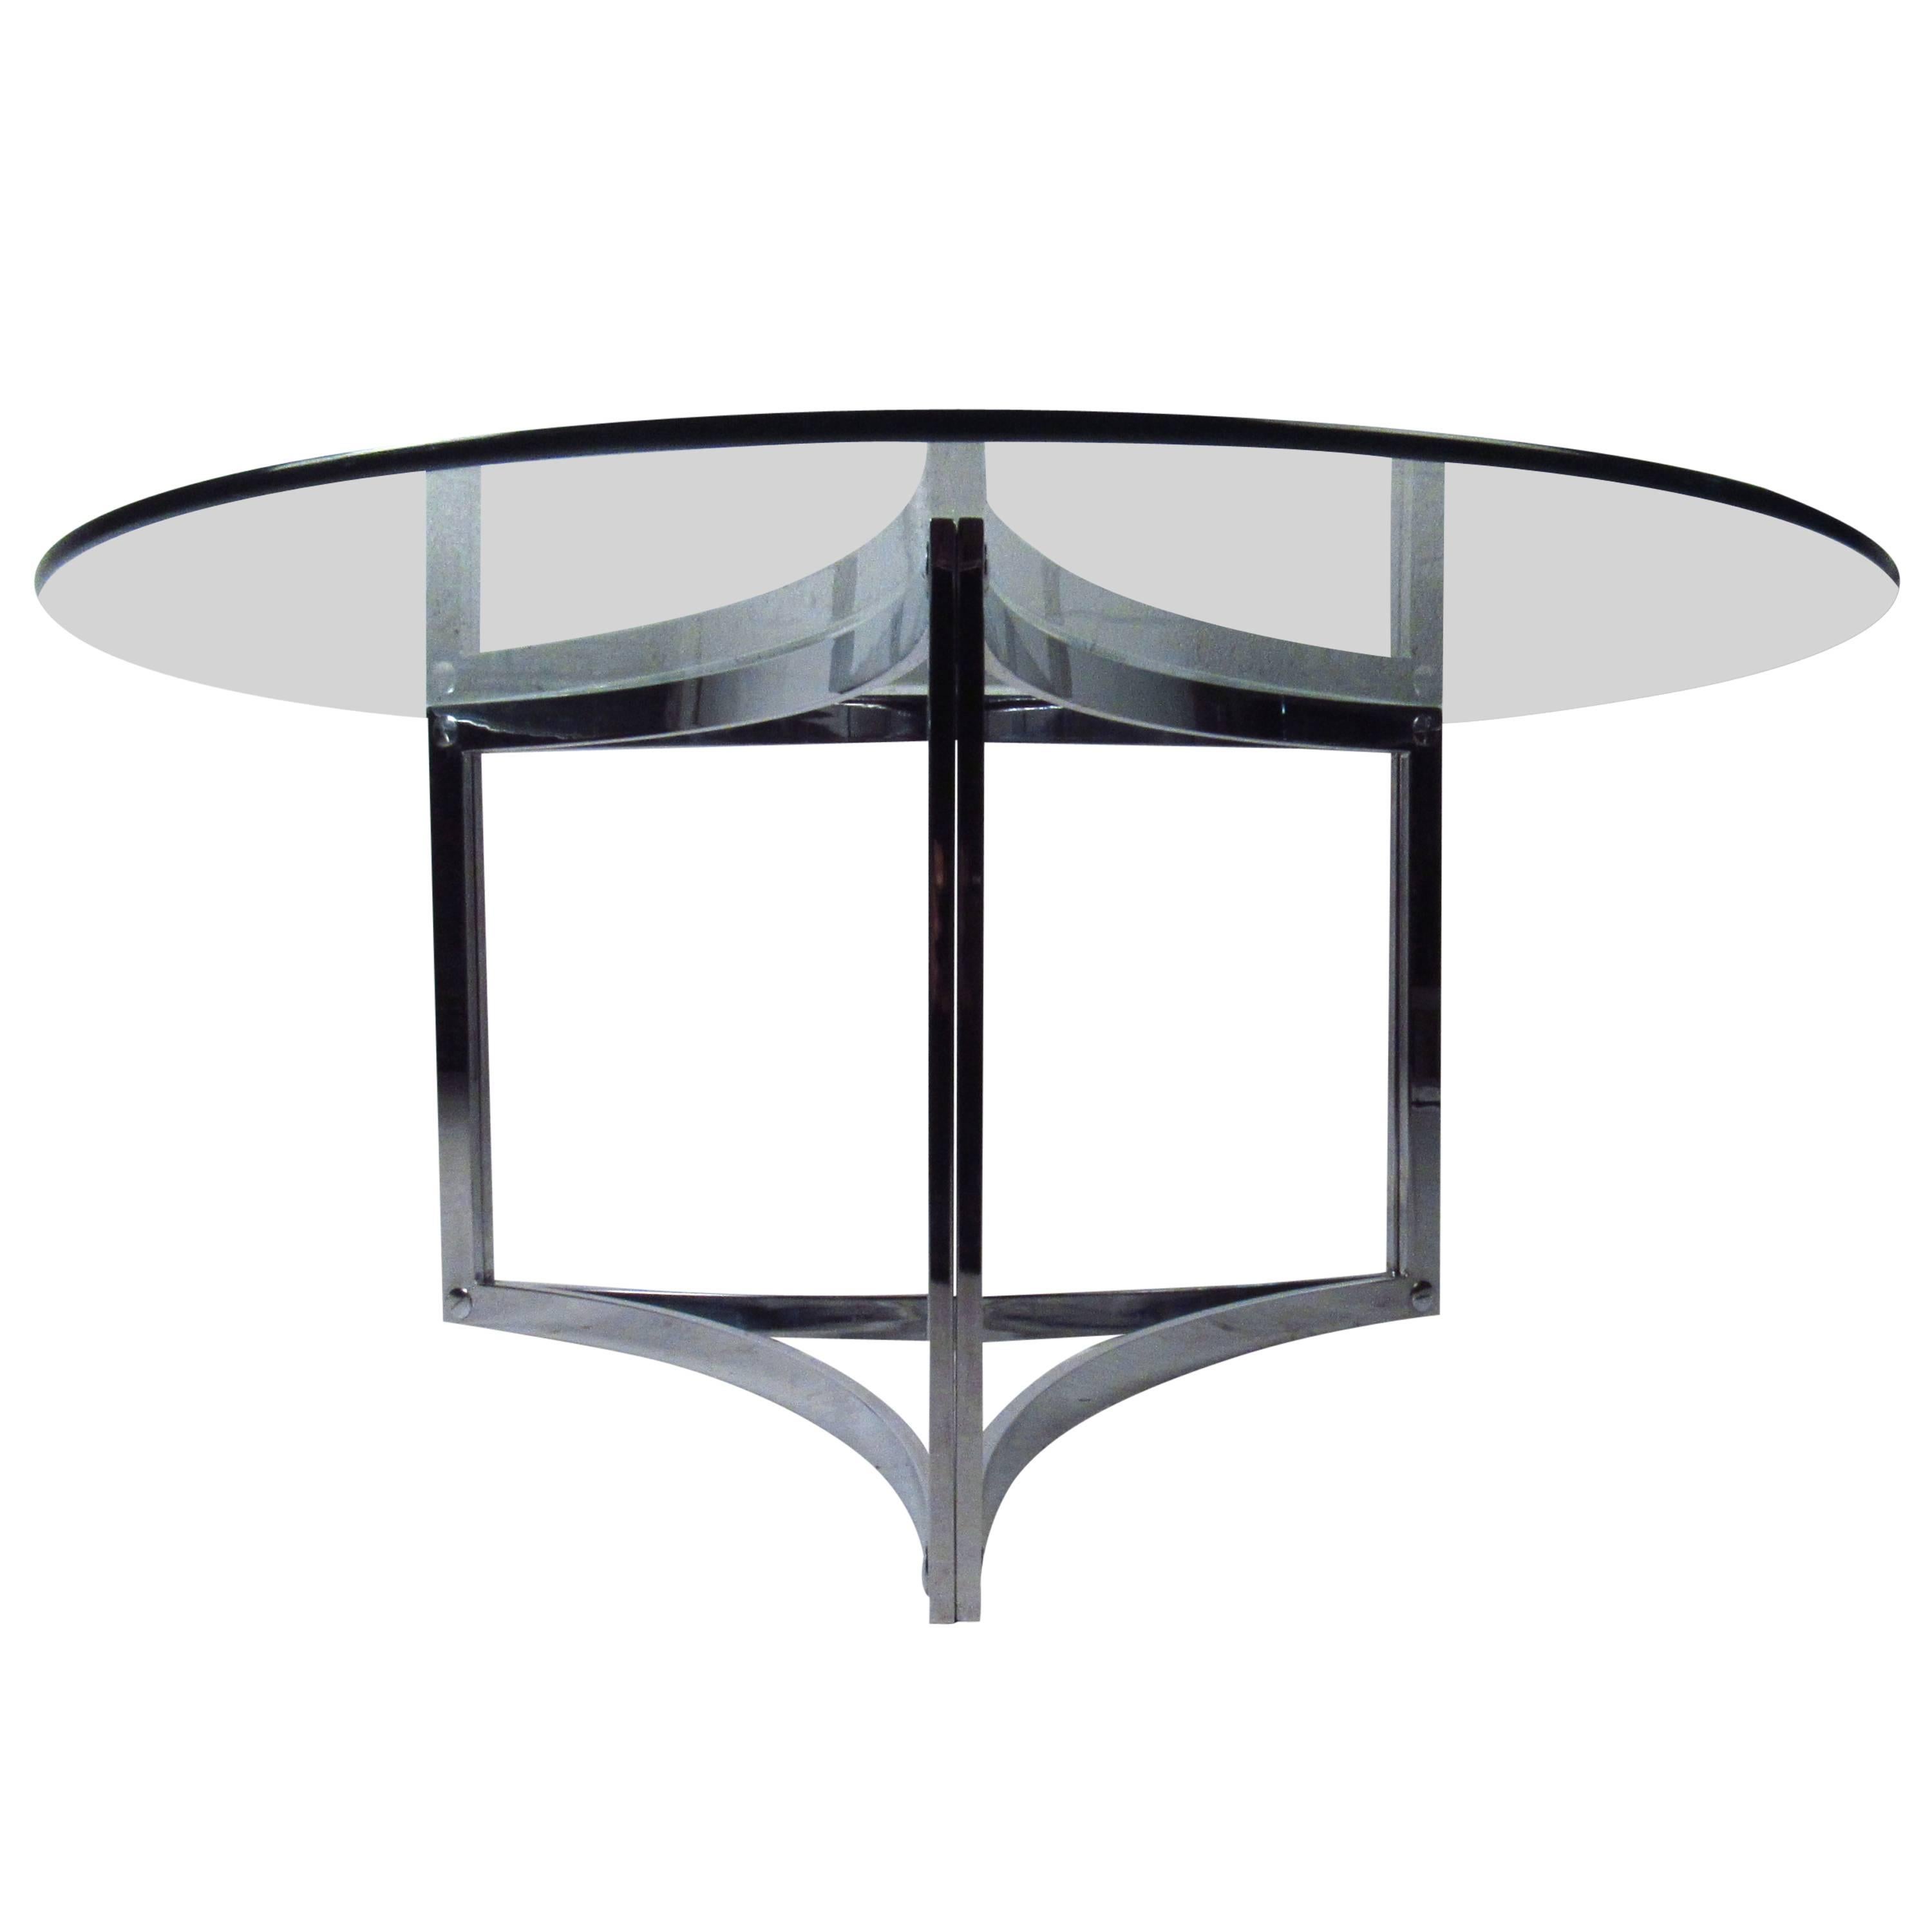 Dieser wunderschöne dreieckige Cocktailtisch ist eine schlichte, aber stilvolle moderne Ergänzung für jeden Raum. Der wunderbare Chromsockel mit der dicken Glasplatte macht ihn zu einem bedeutenden Mittelpunkt. Bitte bestätigen Sie den Standort des